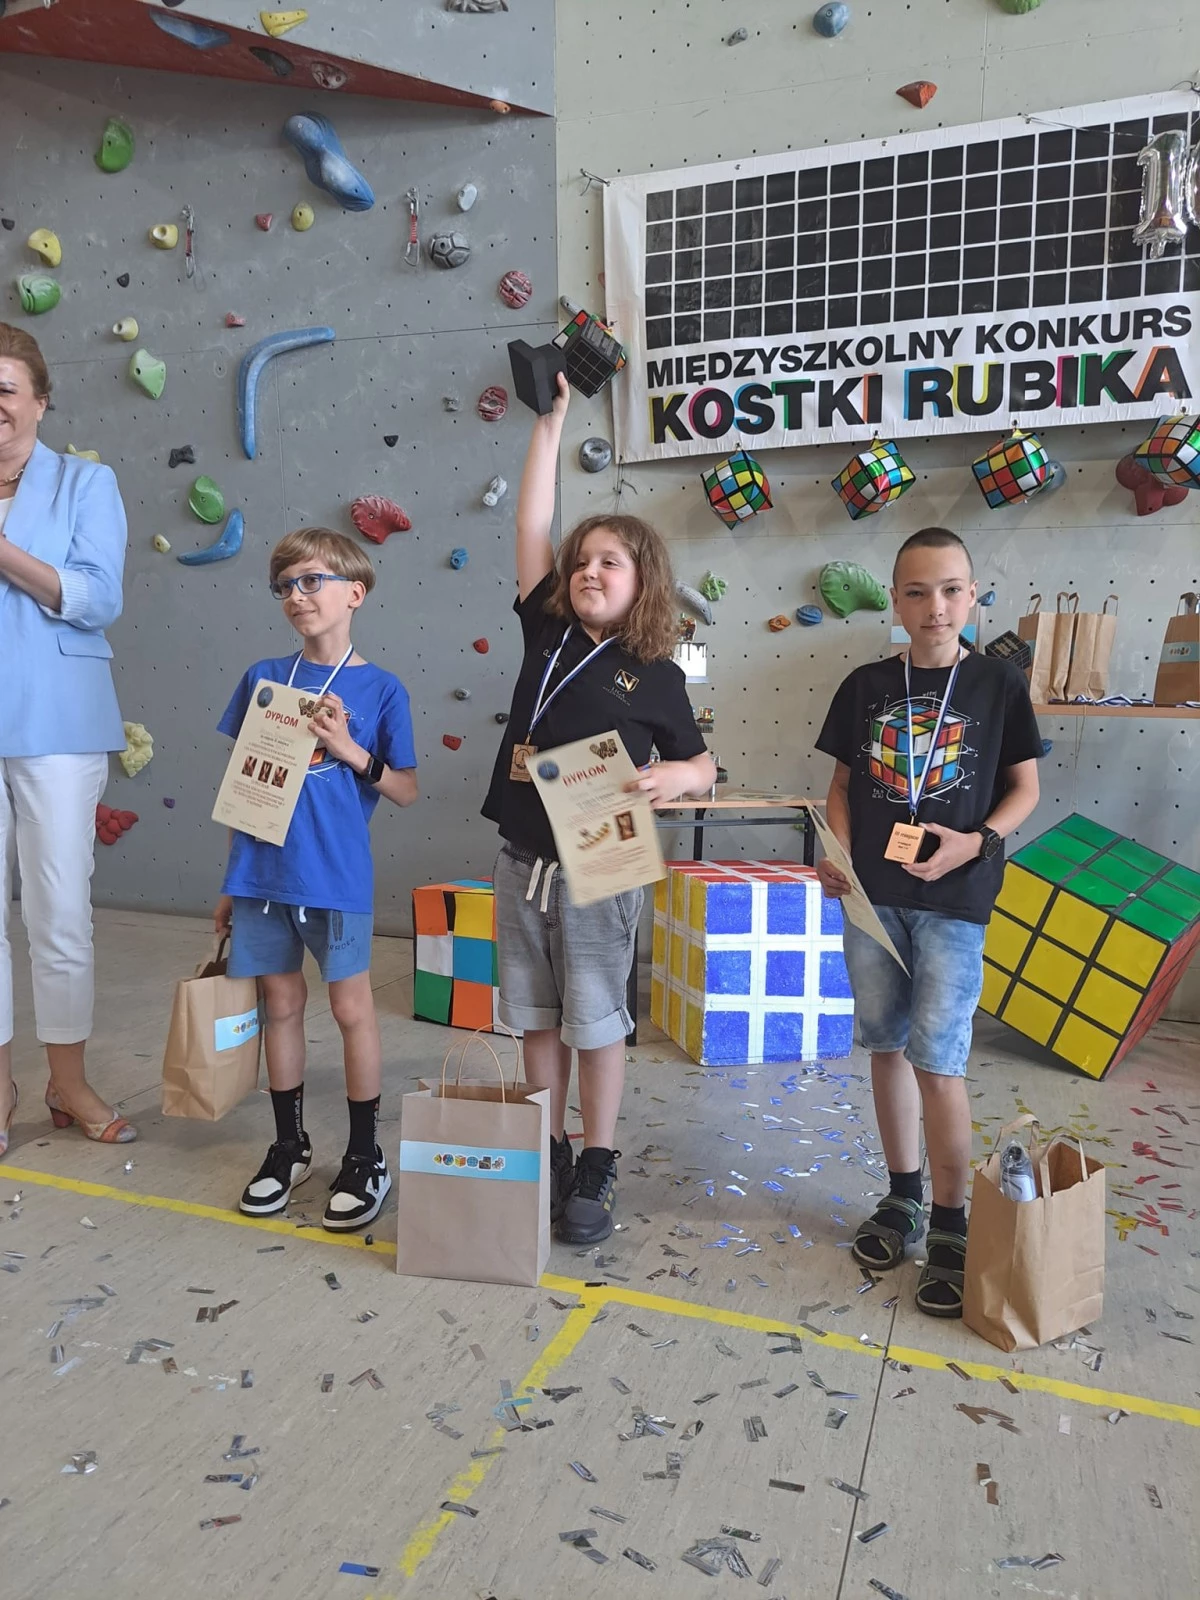 Jubileuszowy konkurs układania Kostki Rubika. Mistrz jest jeden!